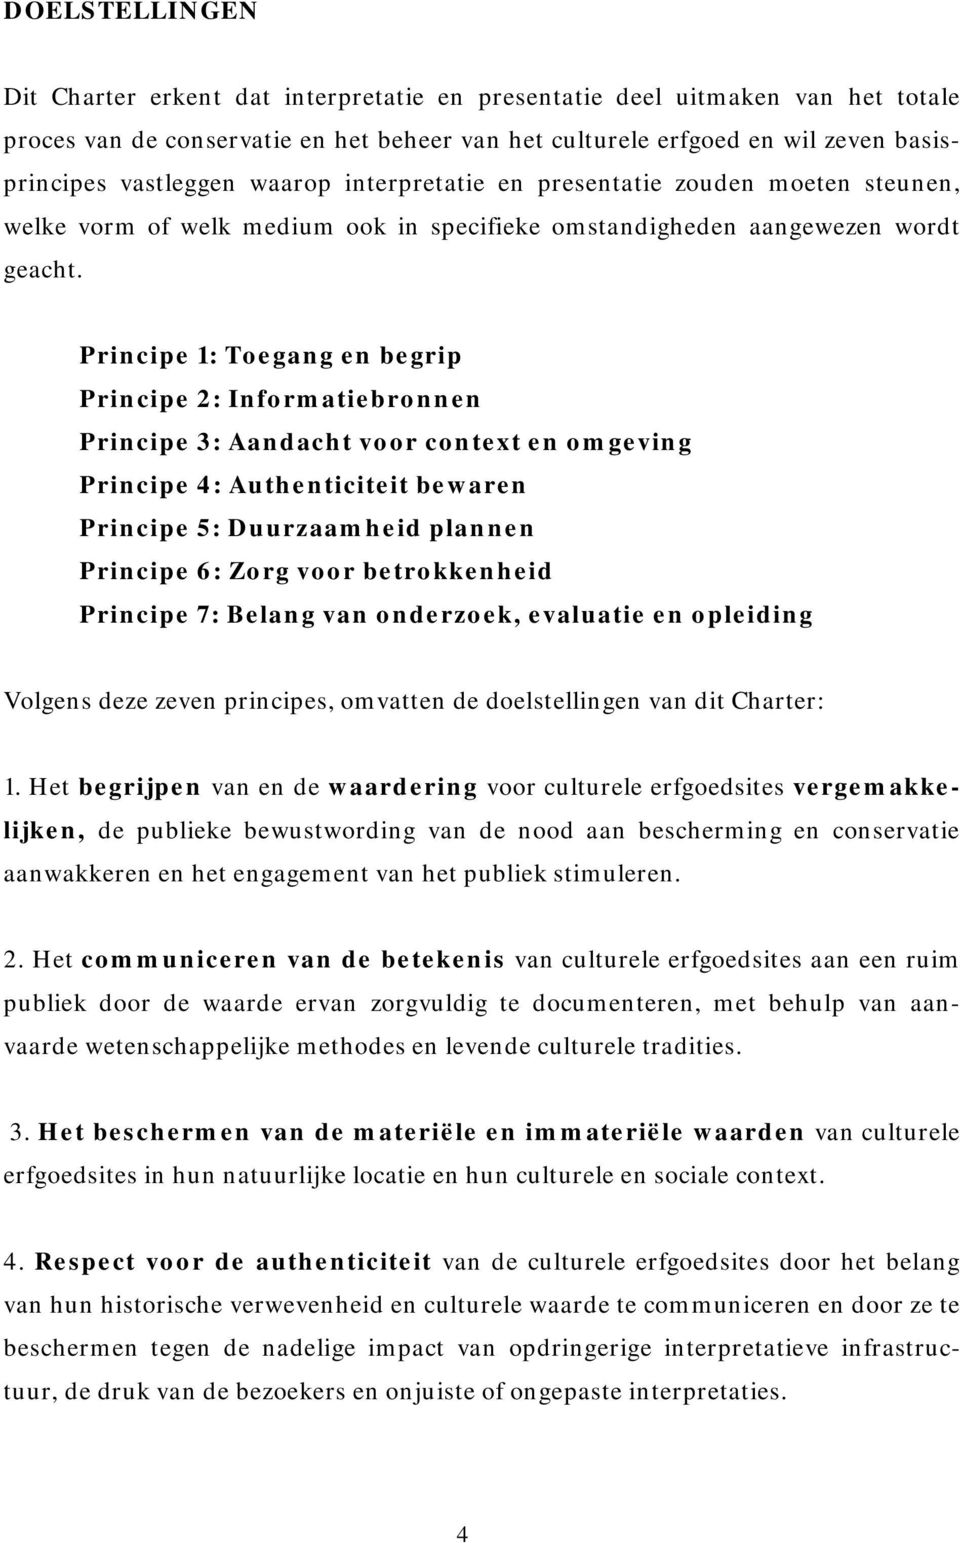 Principe 1: Toegang en begrip Principe 2: Informatiebronnen Principe 3: Aandacht voor context en omgeving Principe 4: Authenticiteit bewaren Principe 5: Duurzaamheid plannen Principe 6: Zorg voor